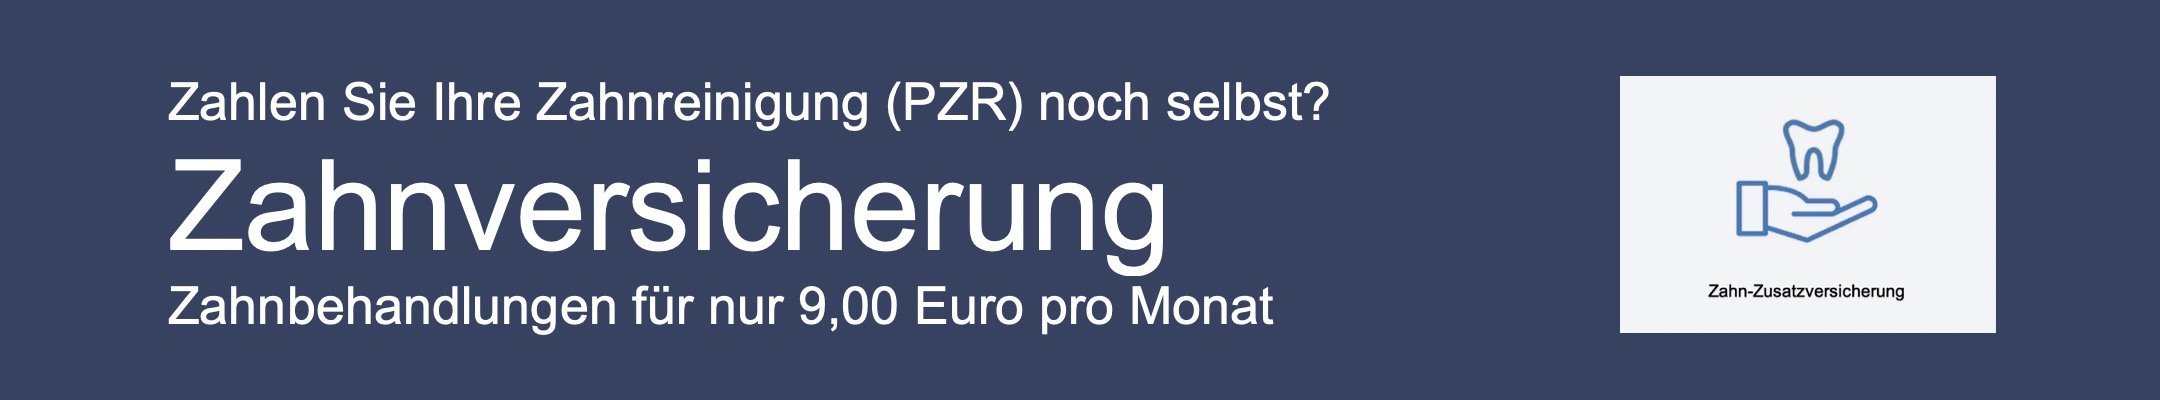 Zahnversicherung - PZR für nur 9 Euro pro Monat